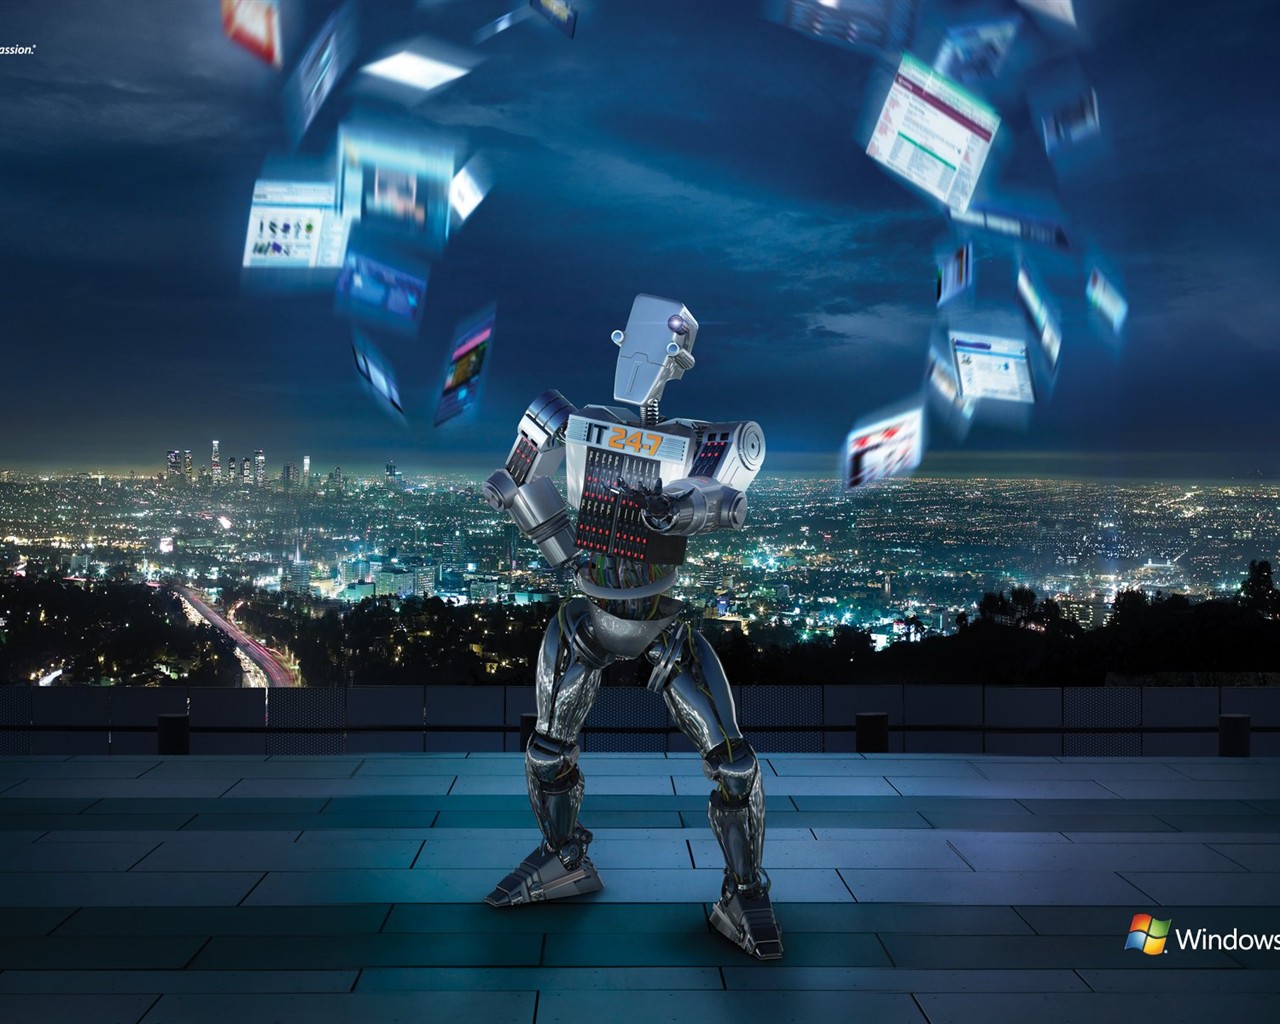 윈도우의 IT 로봇 광고 #1 - 1280x1024